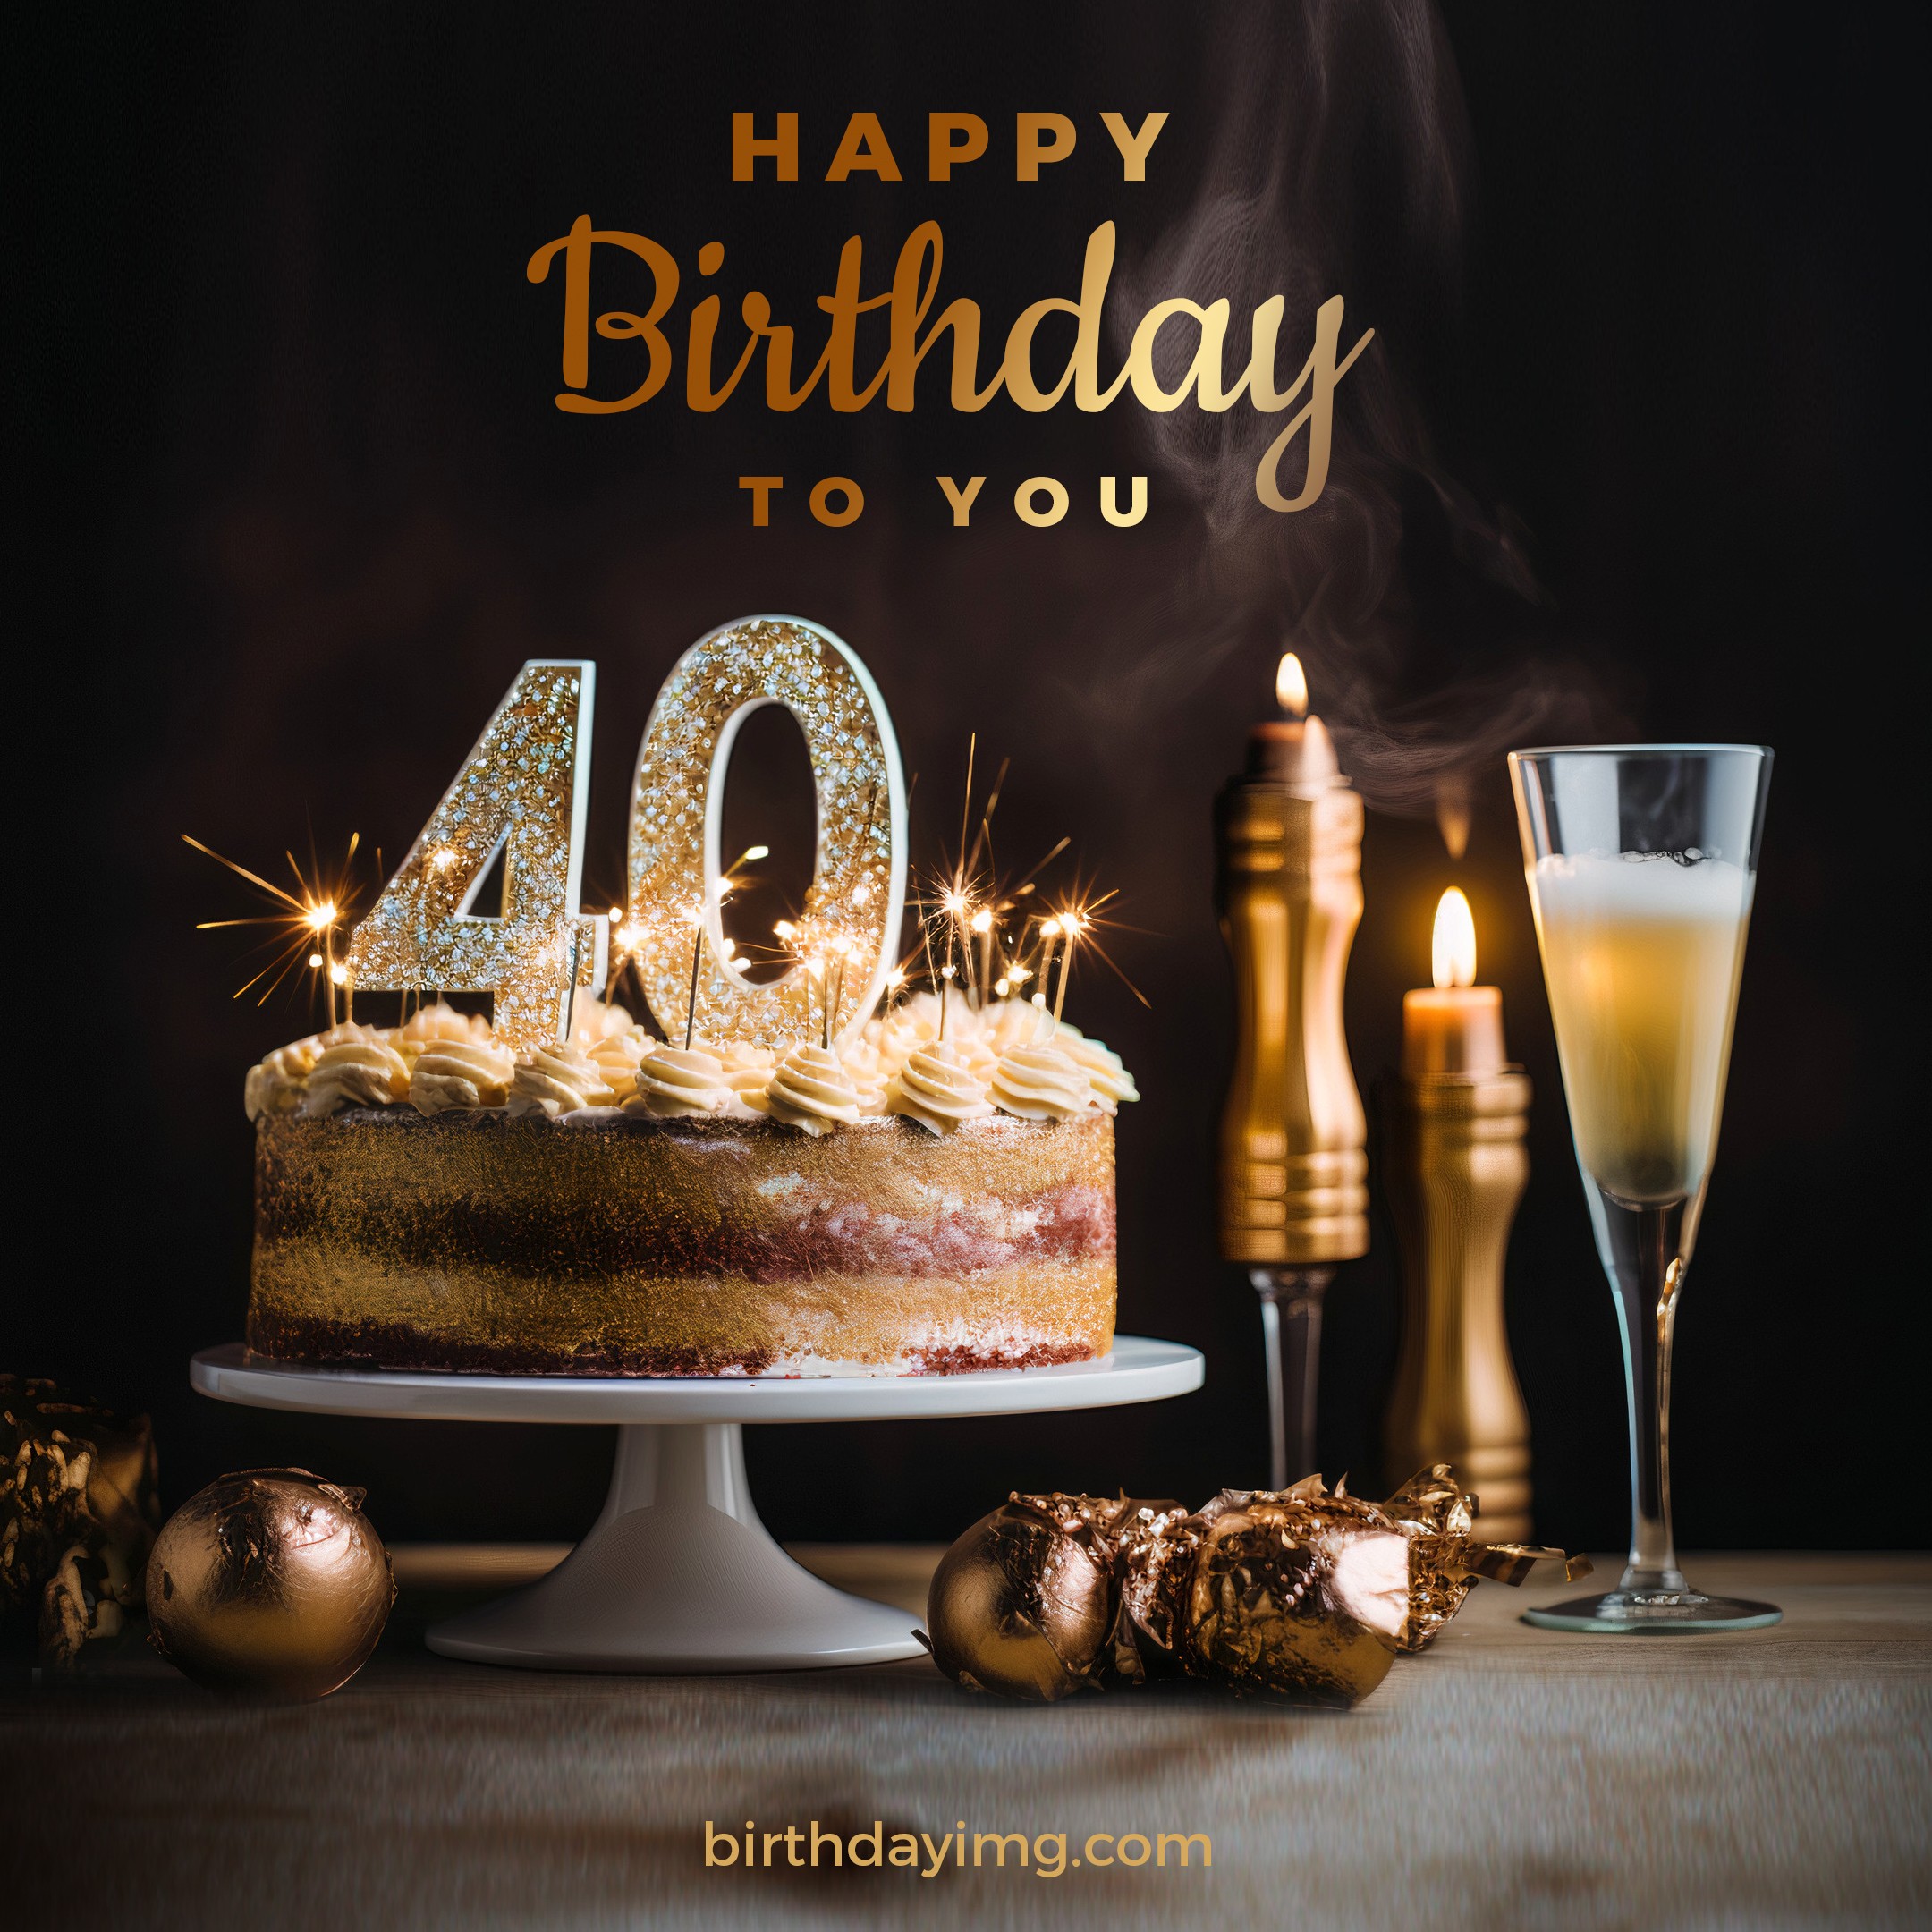 Free 40 years Happy Birthday Image with Cake - birthdayimg.com